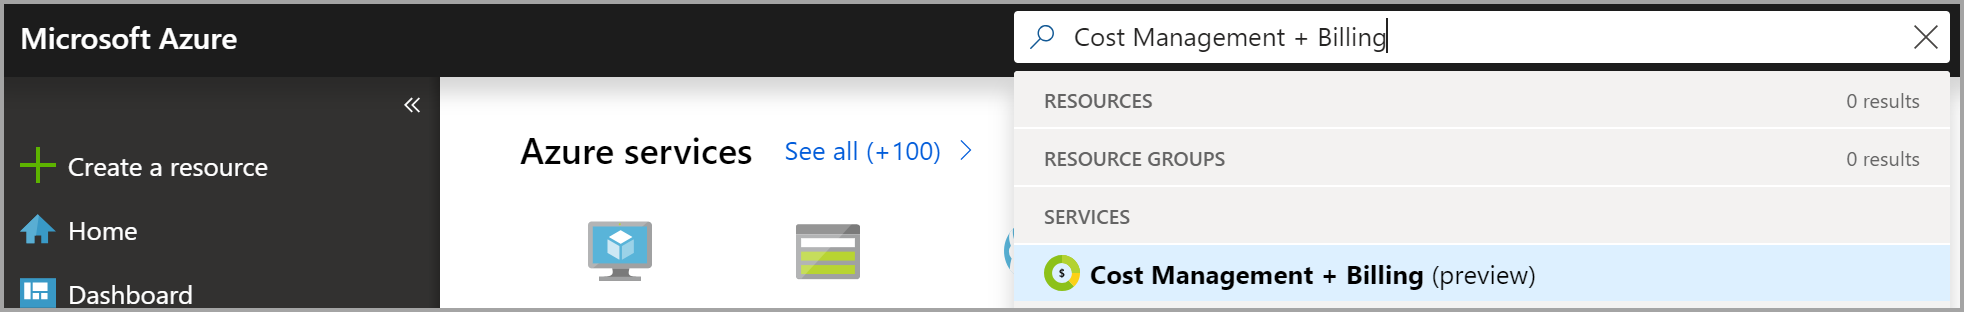 Cuplikan layar menampilkan pencarian portal Microsoft Azure untuk Azure Cost Management + Billing.